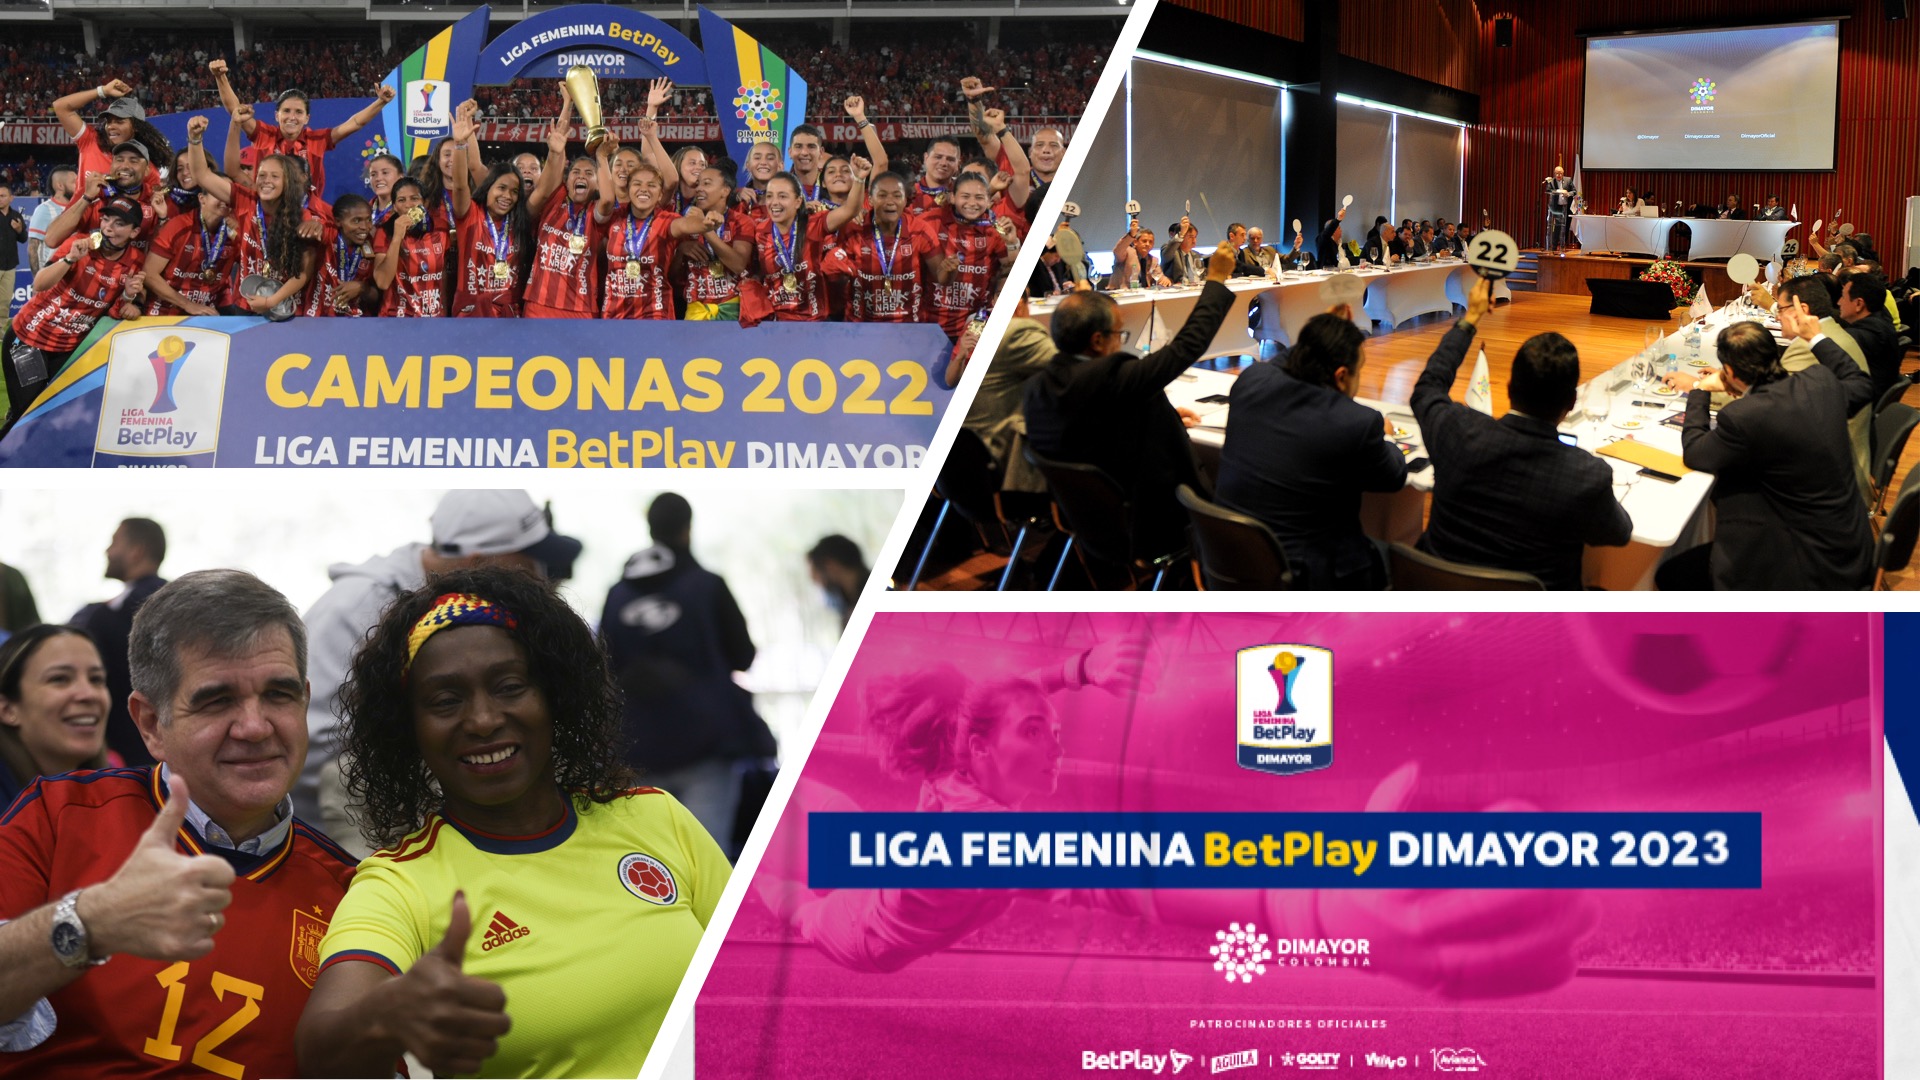 El viernes 20 de enero la Dimayor definirá el formato de competencia de la Liga BetPlay Femenina en la temporada 2023